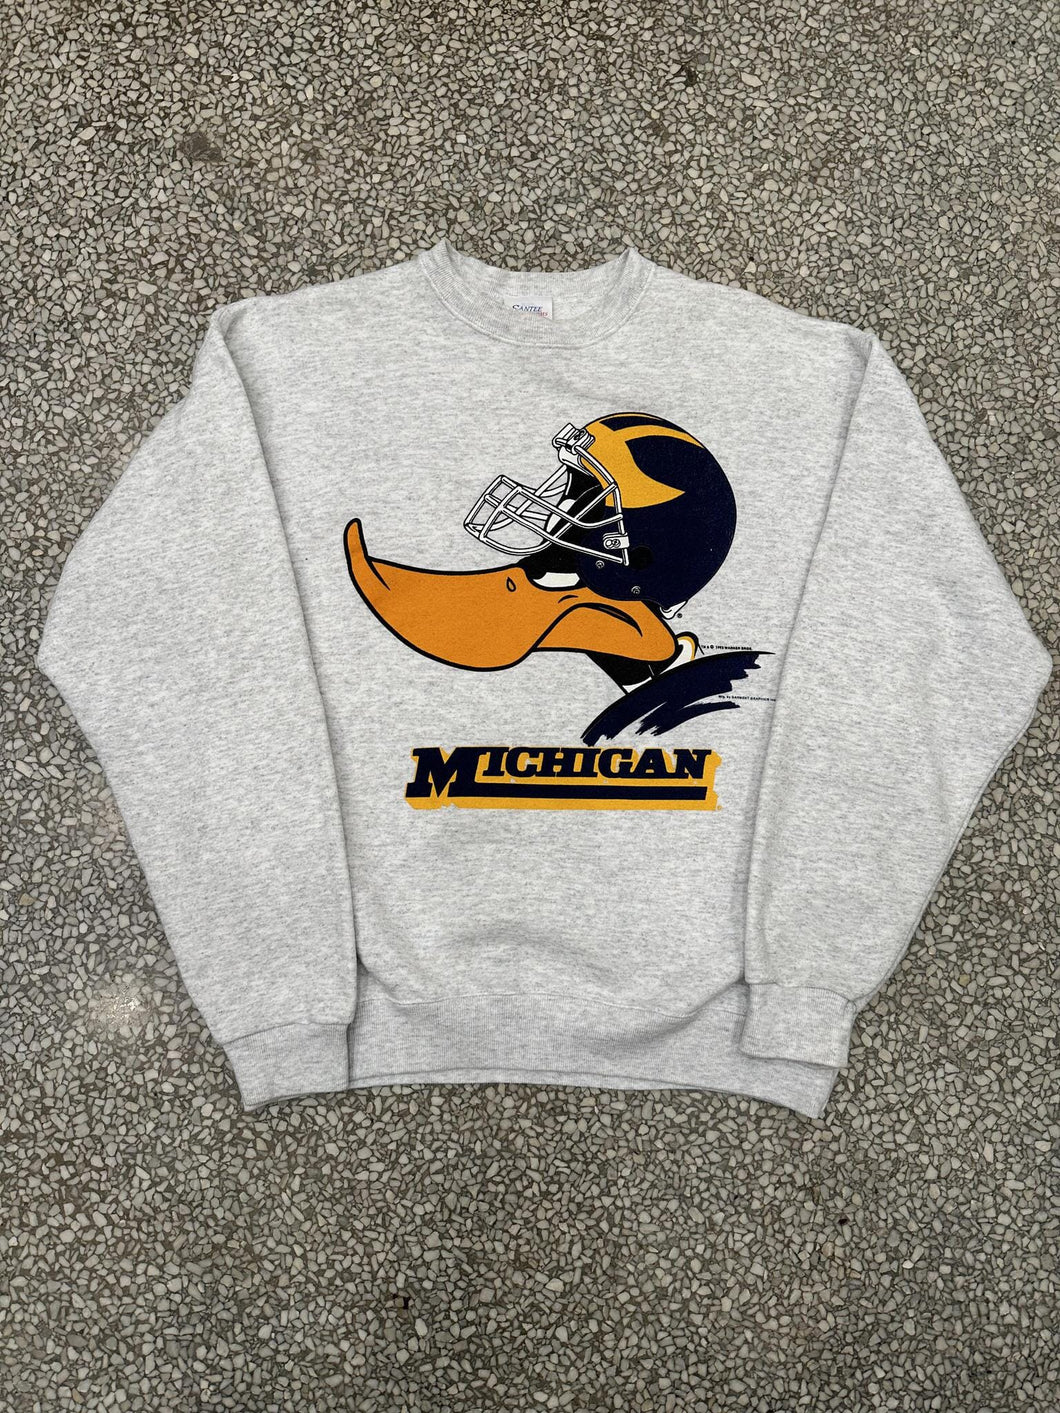 Michigan Wolverines Vintage 1993 Daffy Duck Crewneck Grey ABC Vintage 